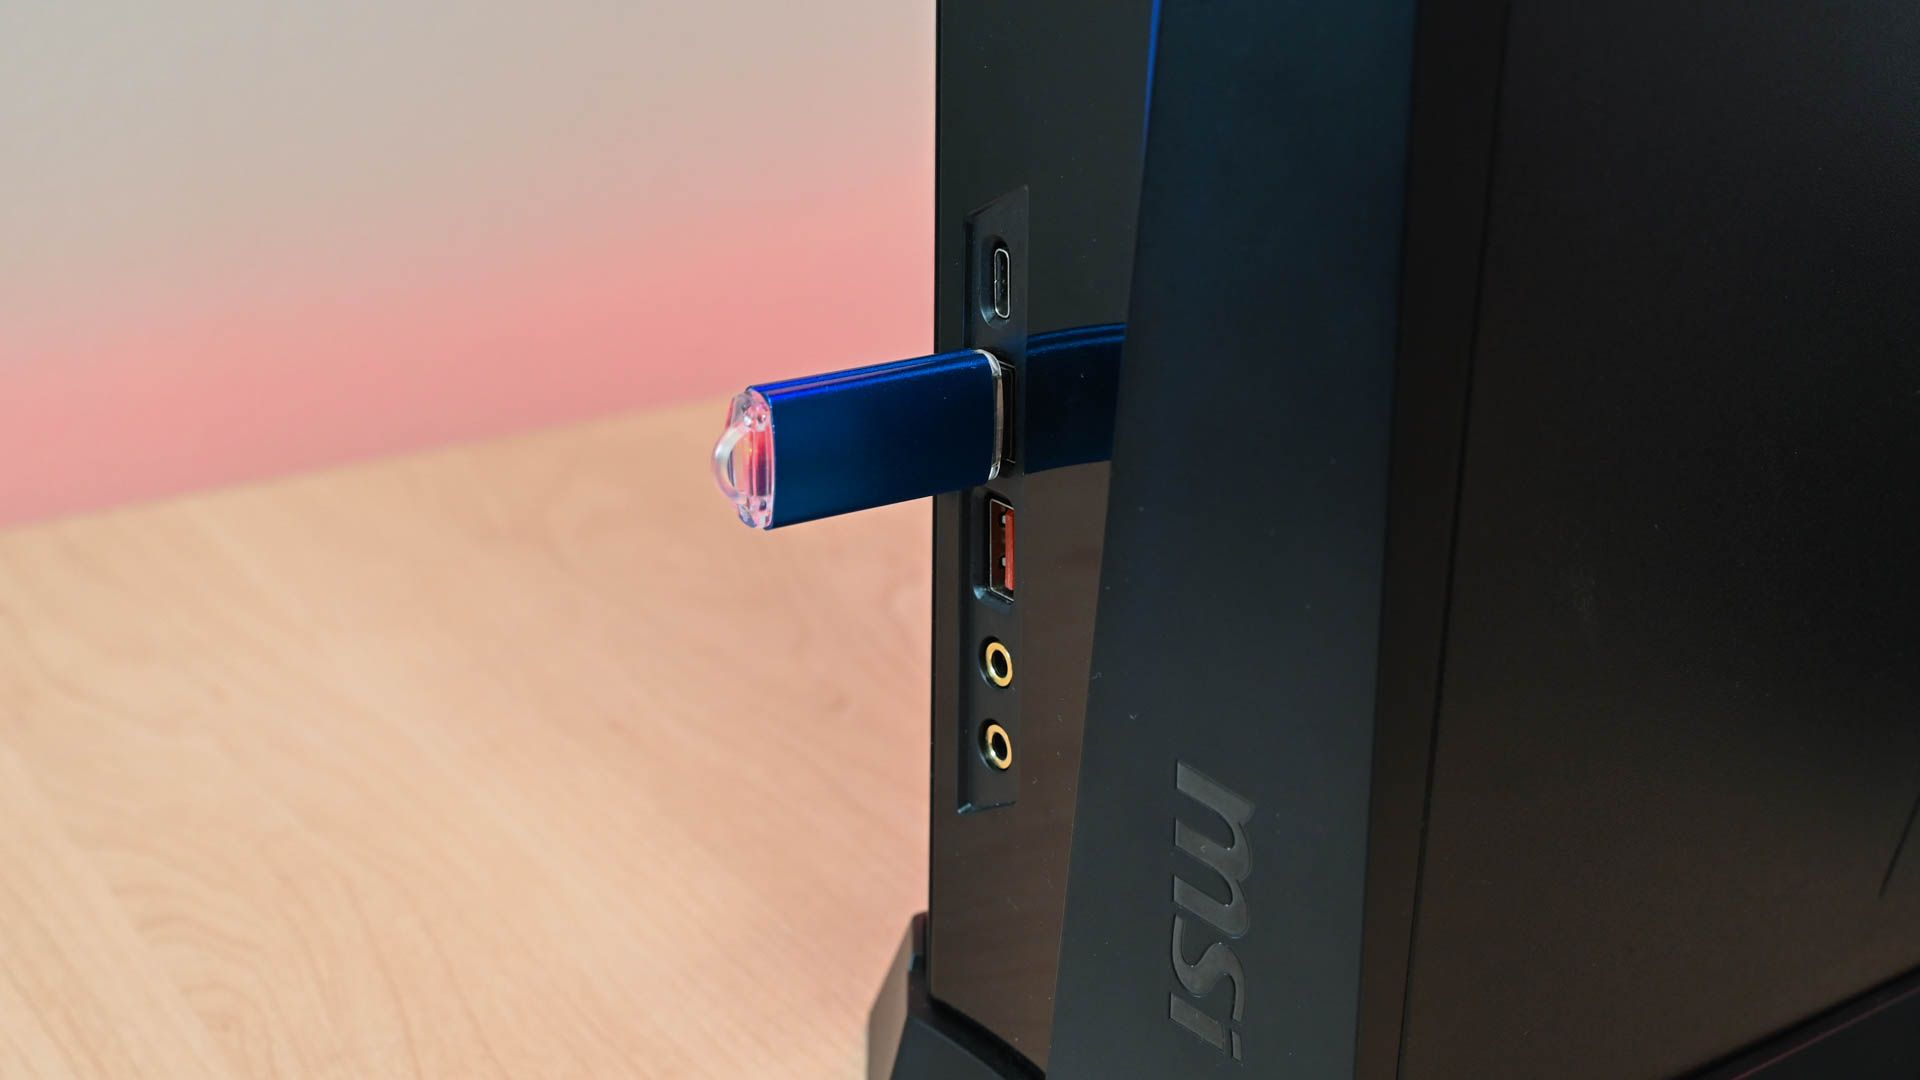 Unidade USB conectada a um PC MSI